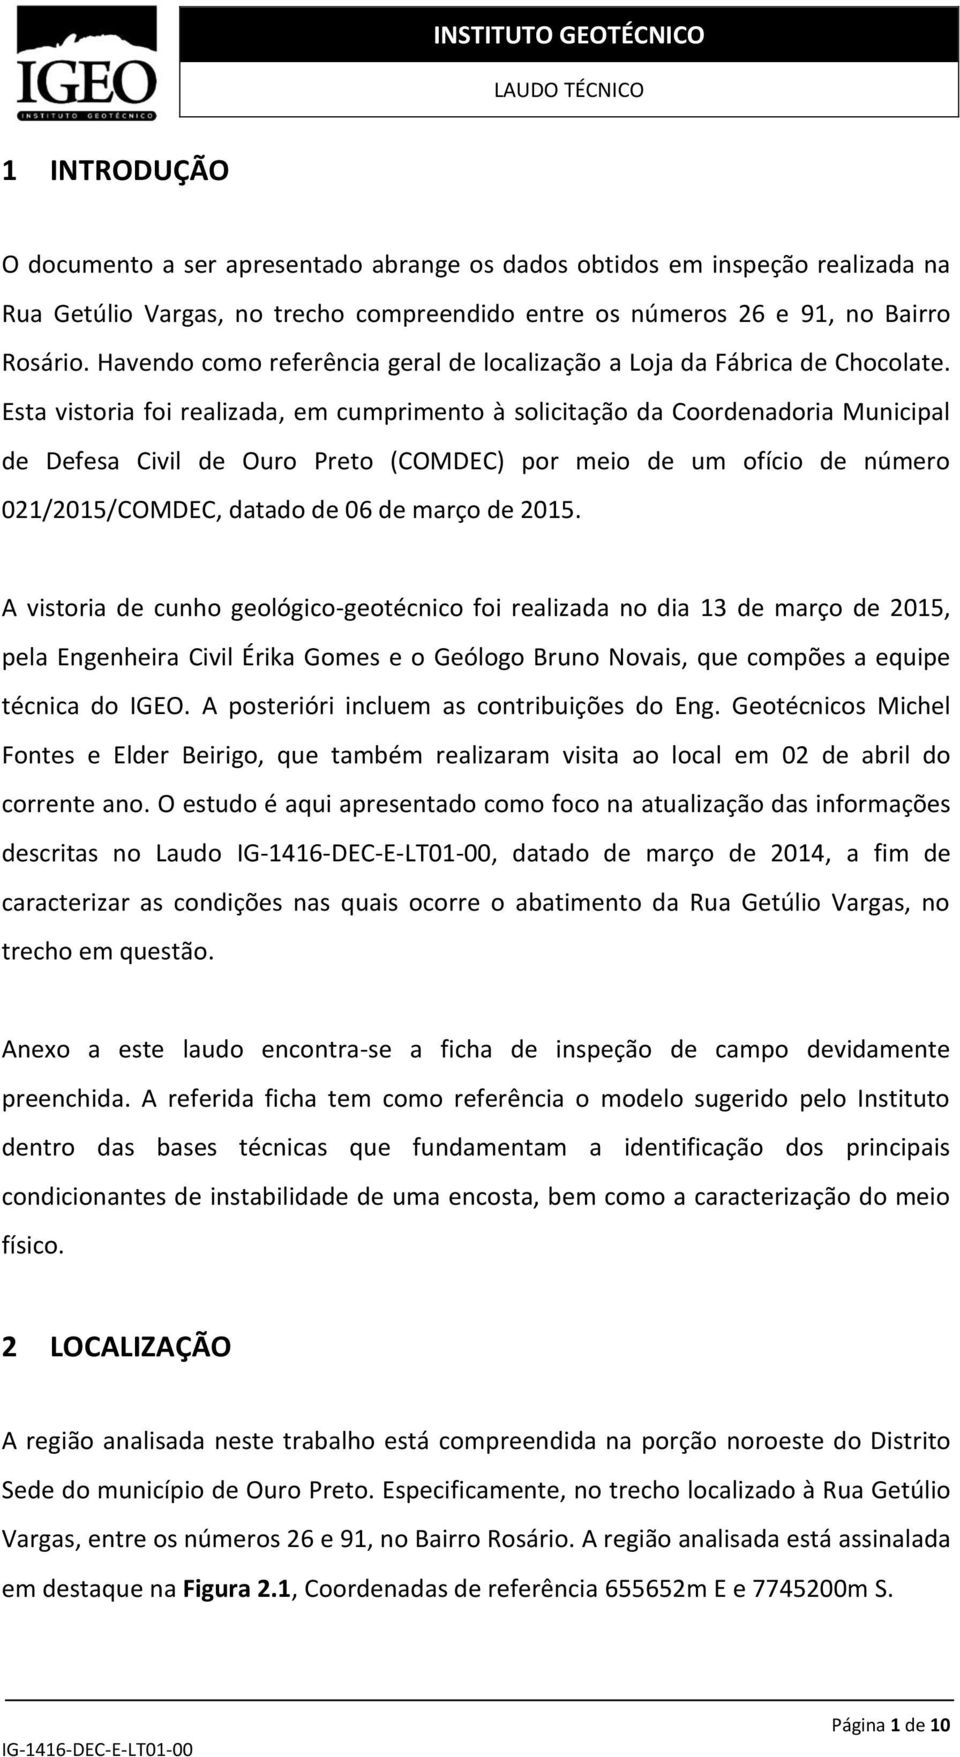 Esta vistoria foi realizada, em cumprimento à solicitação da Coordenadoria Municipal de Defesa Civil de Ouro Preto (COMDEC) por meio de um ofício de número 021/2015/COMDEC, datado de 06 de março de